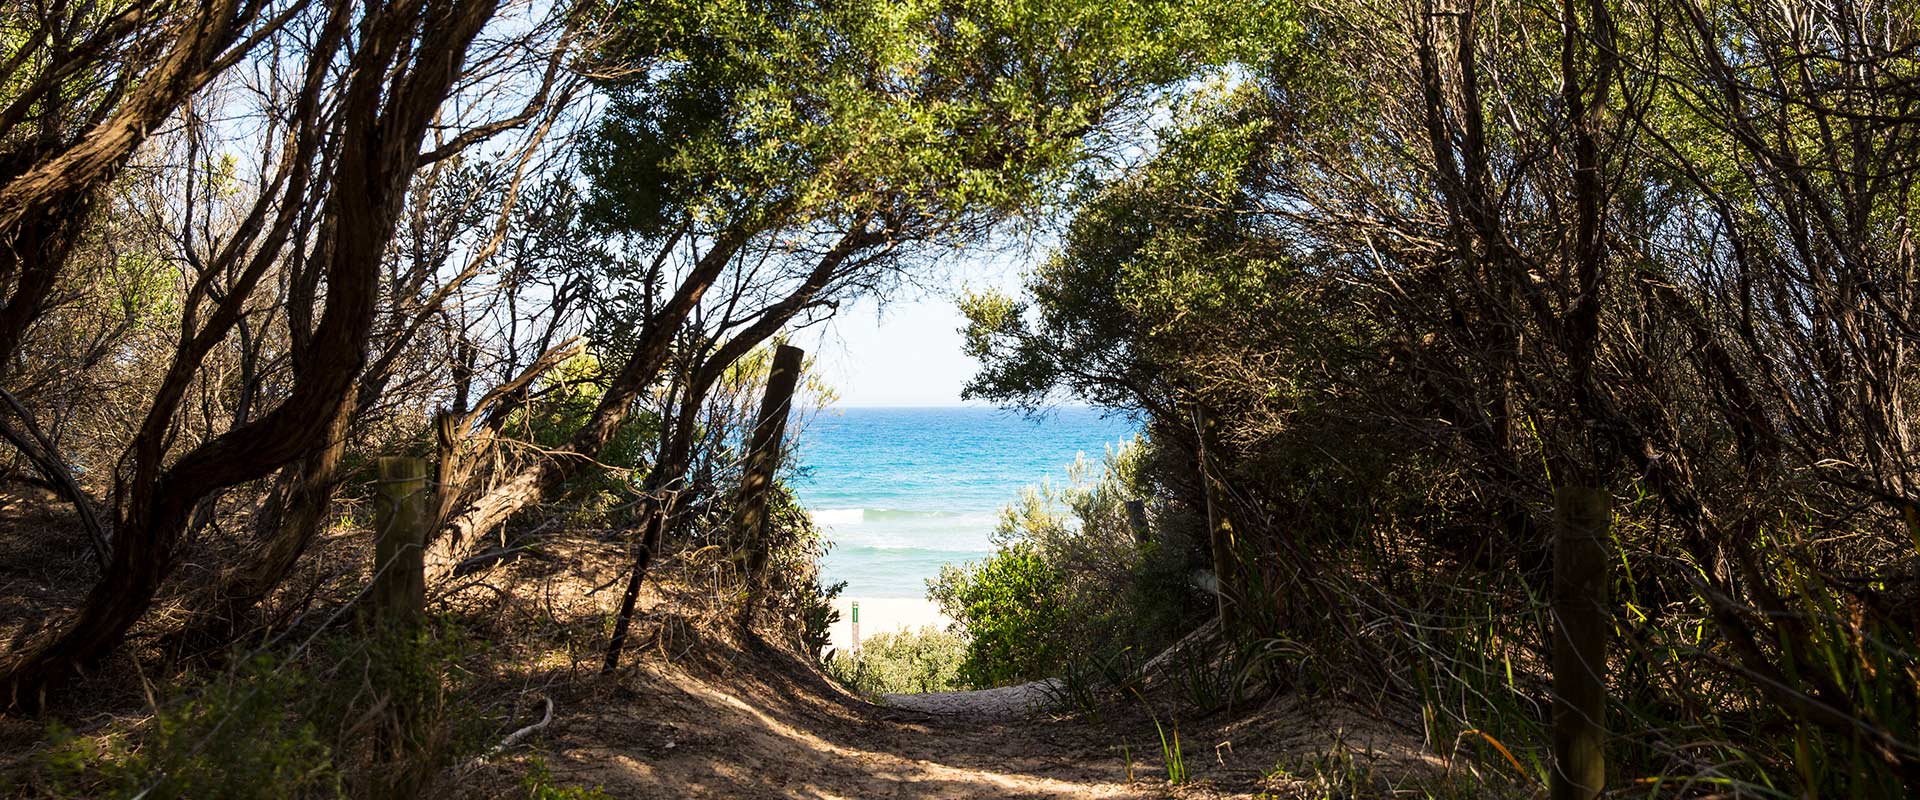 A narrow path leads through coastal shrubs down to an ocean beach